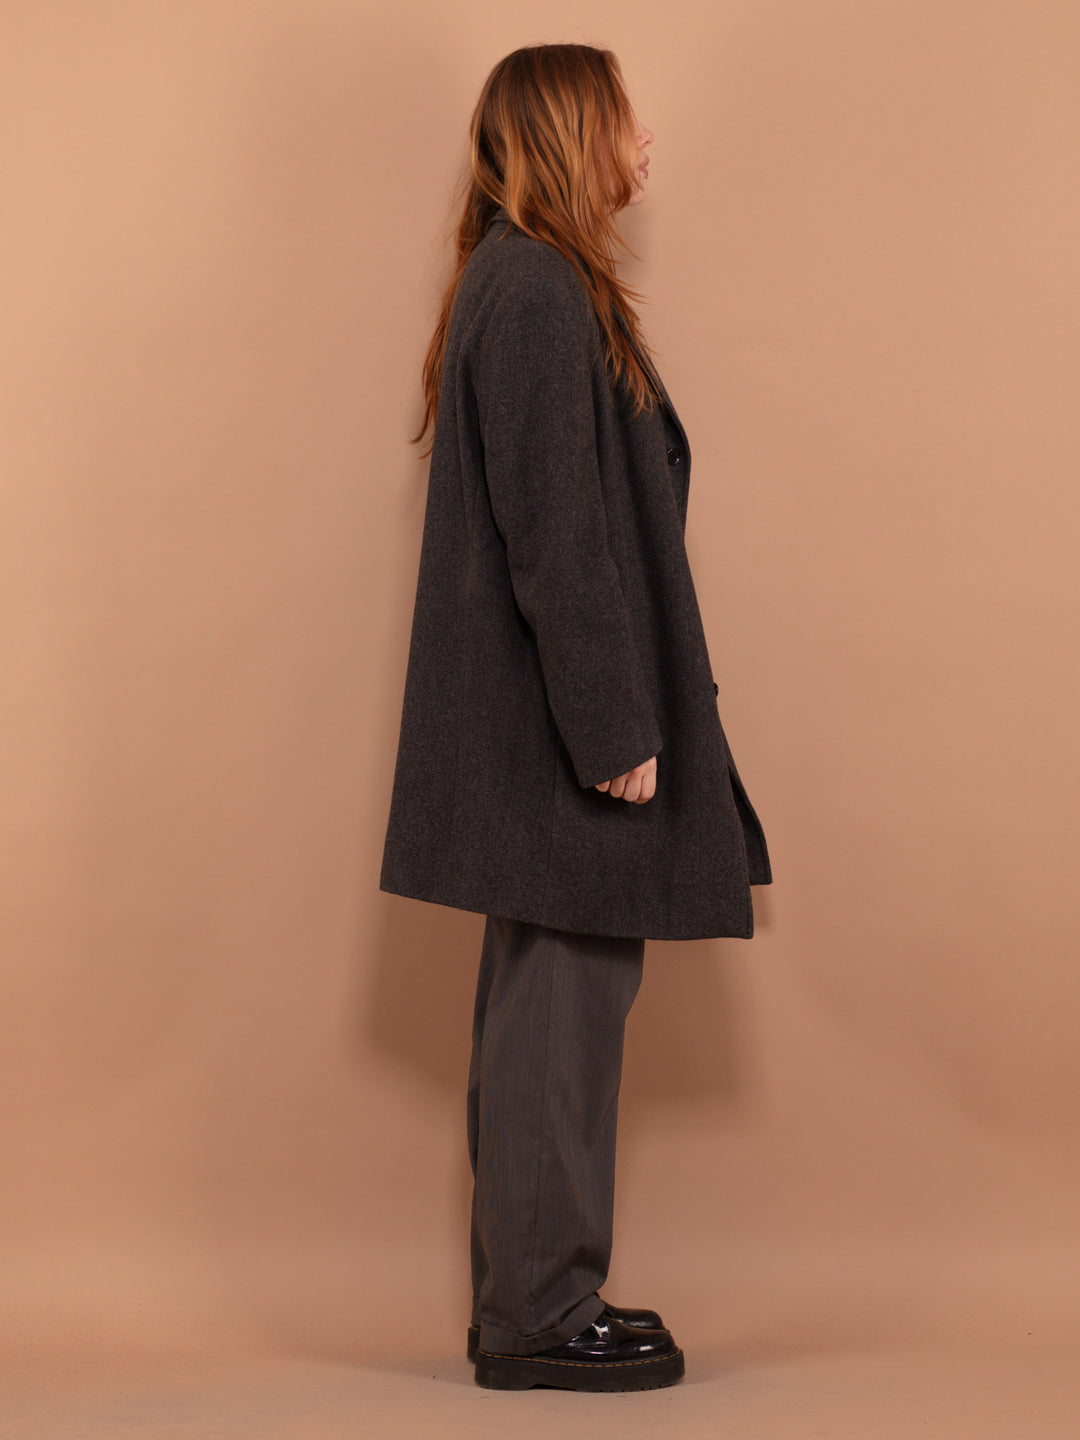 Gray Wool Coat 00's, Size XL Vintage Wool Coat, Retro Wool Coat, Oversized Wool Coat, Spring Topcoat,  Office Coat, Minimalist Outerwear